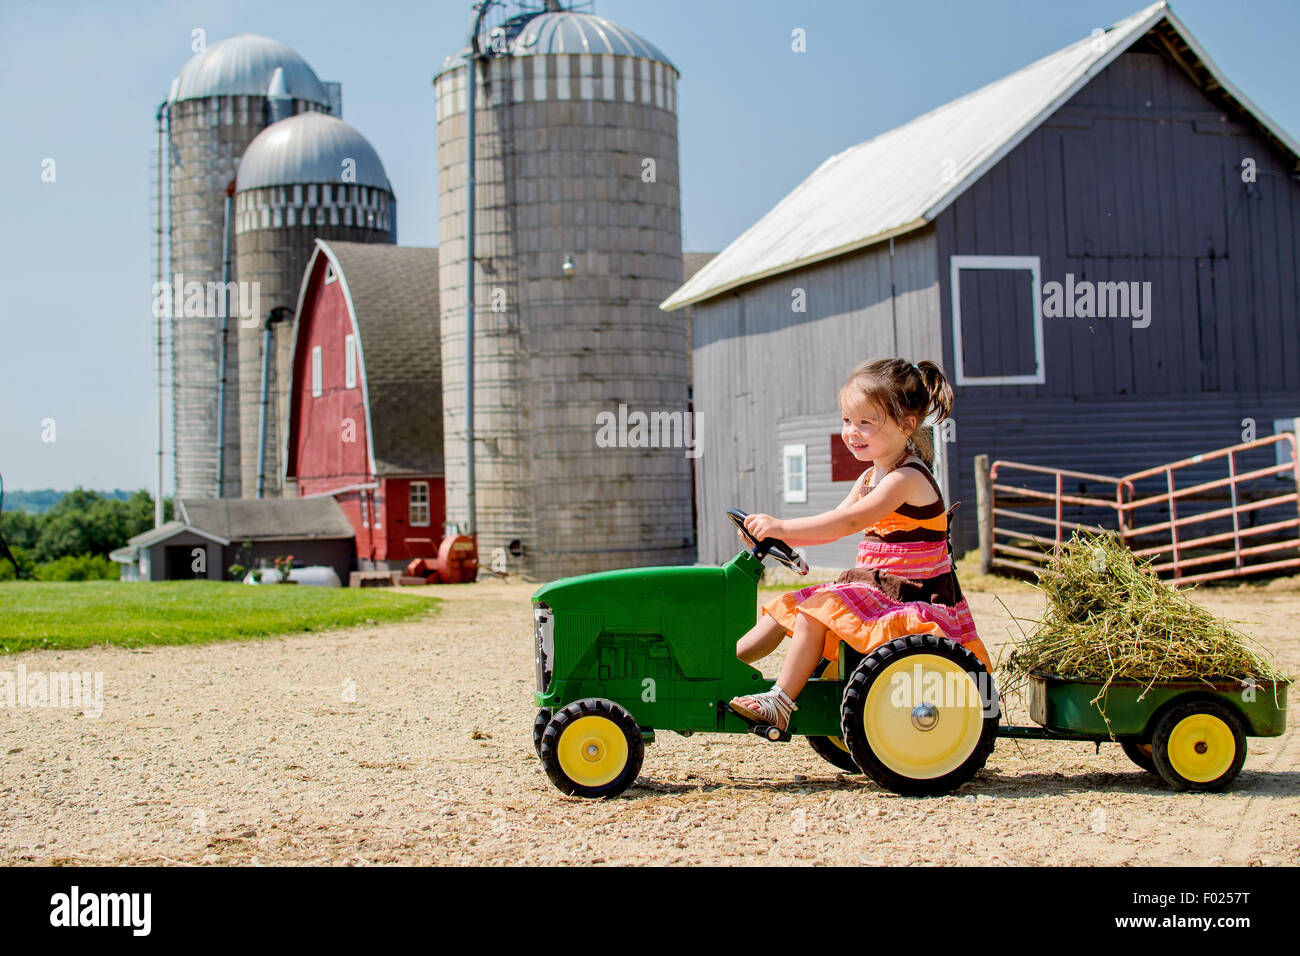 L'enseignement primaire âgés de conduire son tracteur jouet de fille Banque D'Images